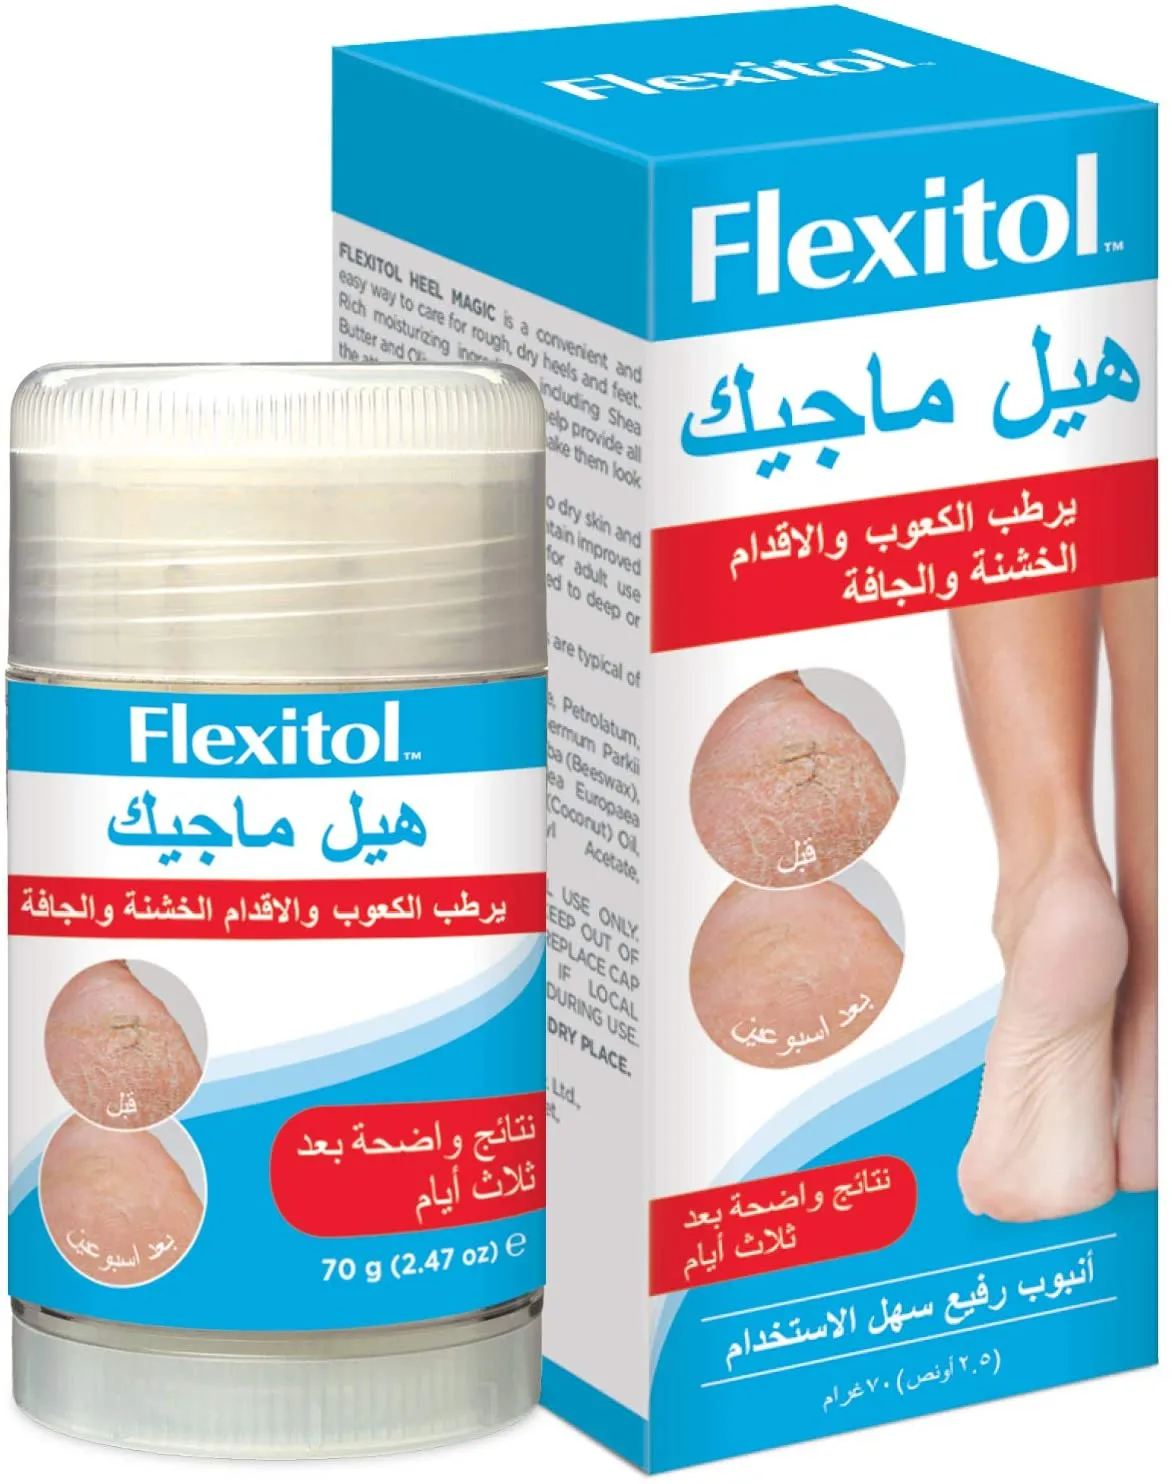 Flexitol Heel Magic